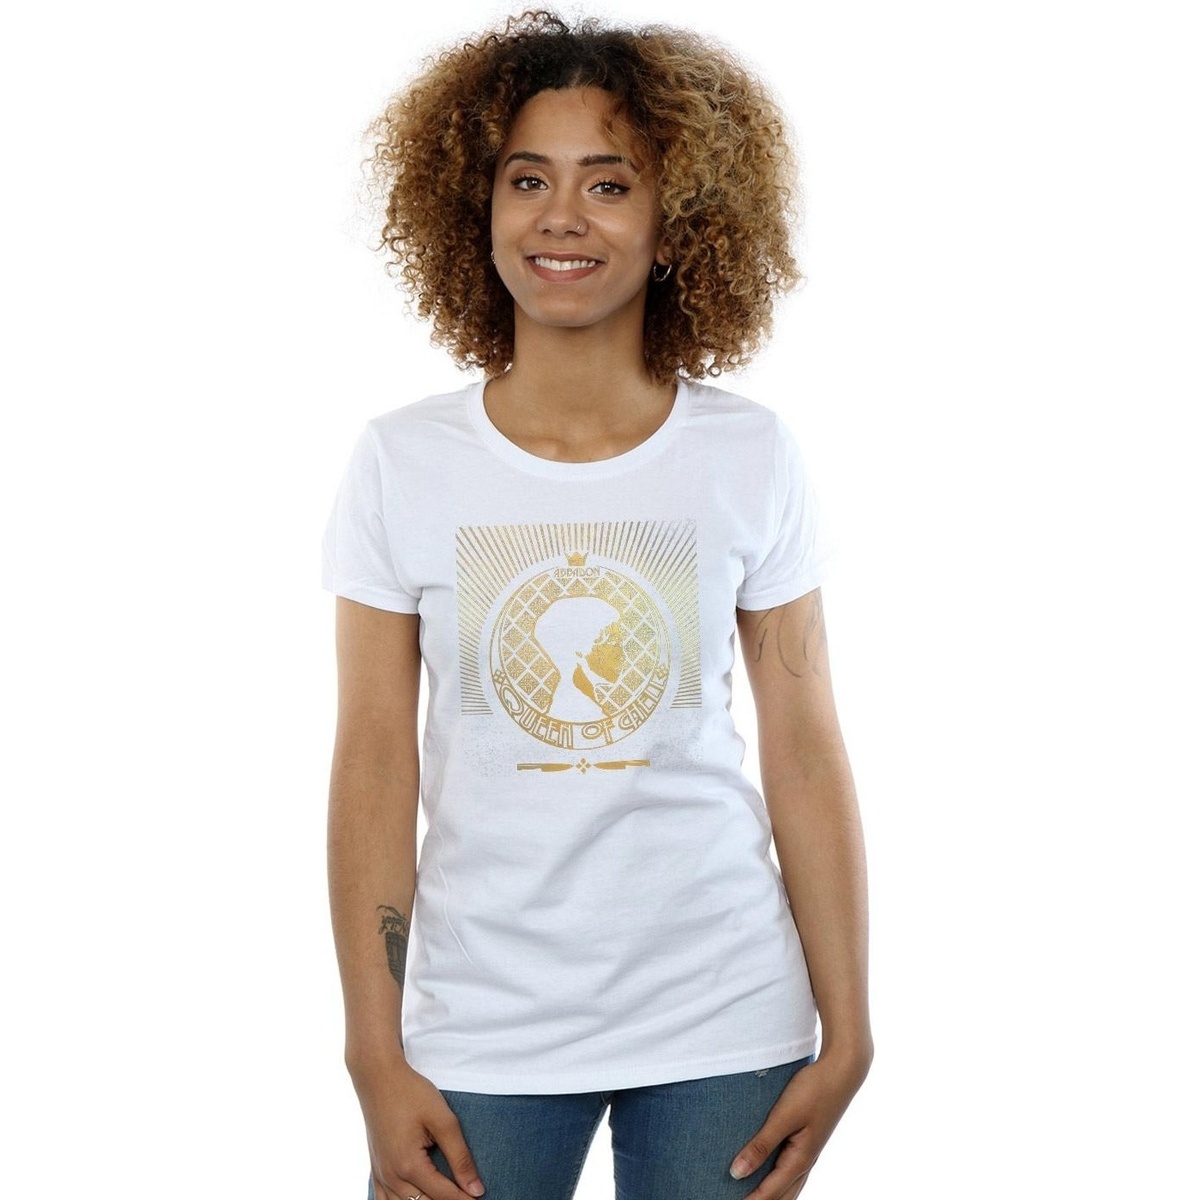 Vêtements Femme T-shirts manches longues Supernatural Abbadon Crest Blanc